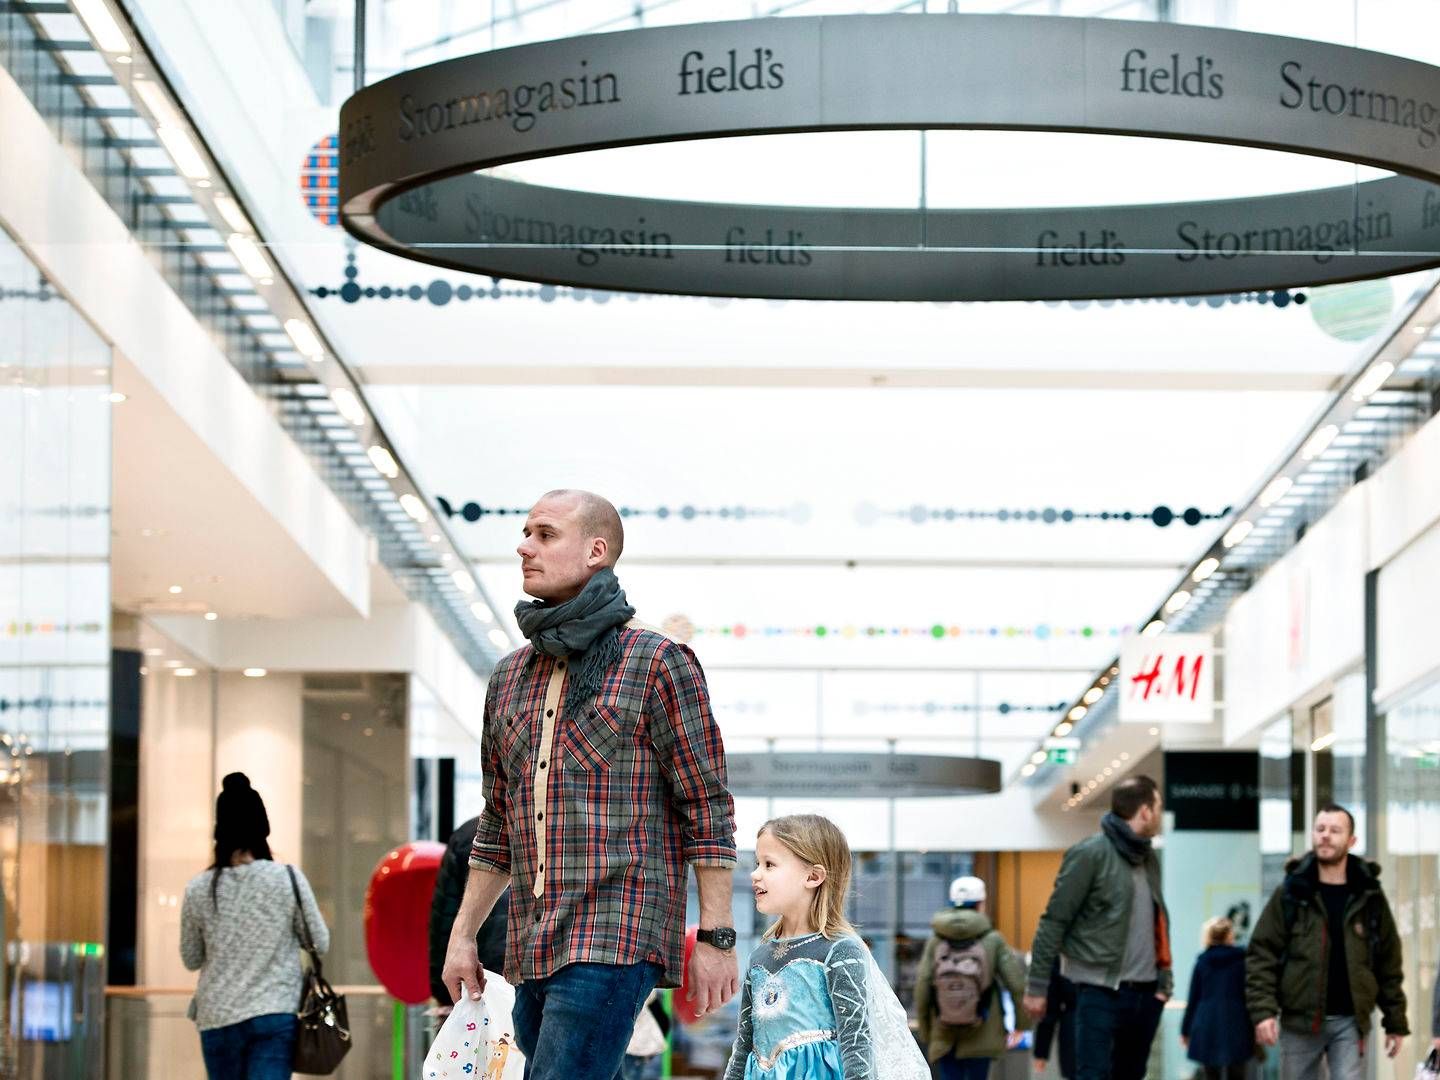 Det er gået forholdsvis godt med salget i Klépierres danske centre, som blandt andet omfatter Field's Ørestaden. | Foto: Lars Krabbe/Jyllands-Posten/Ritzau Scanpix